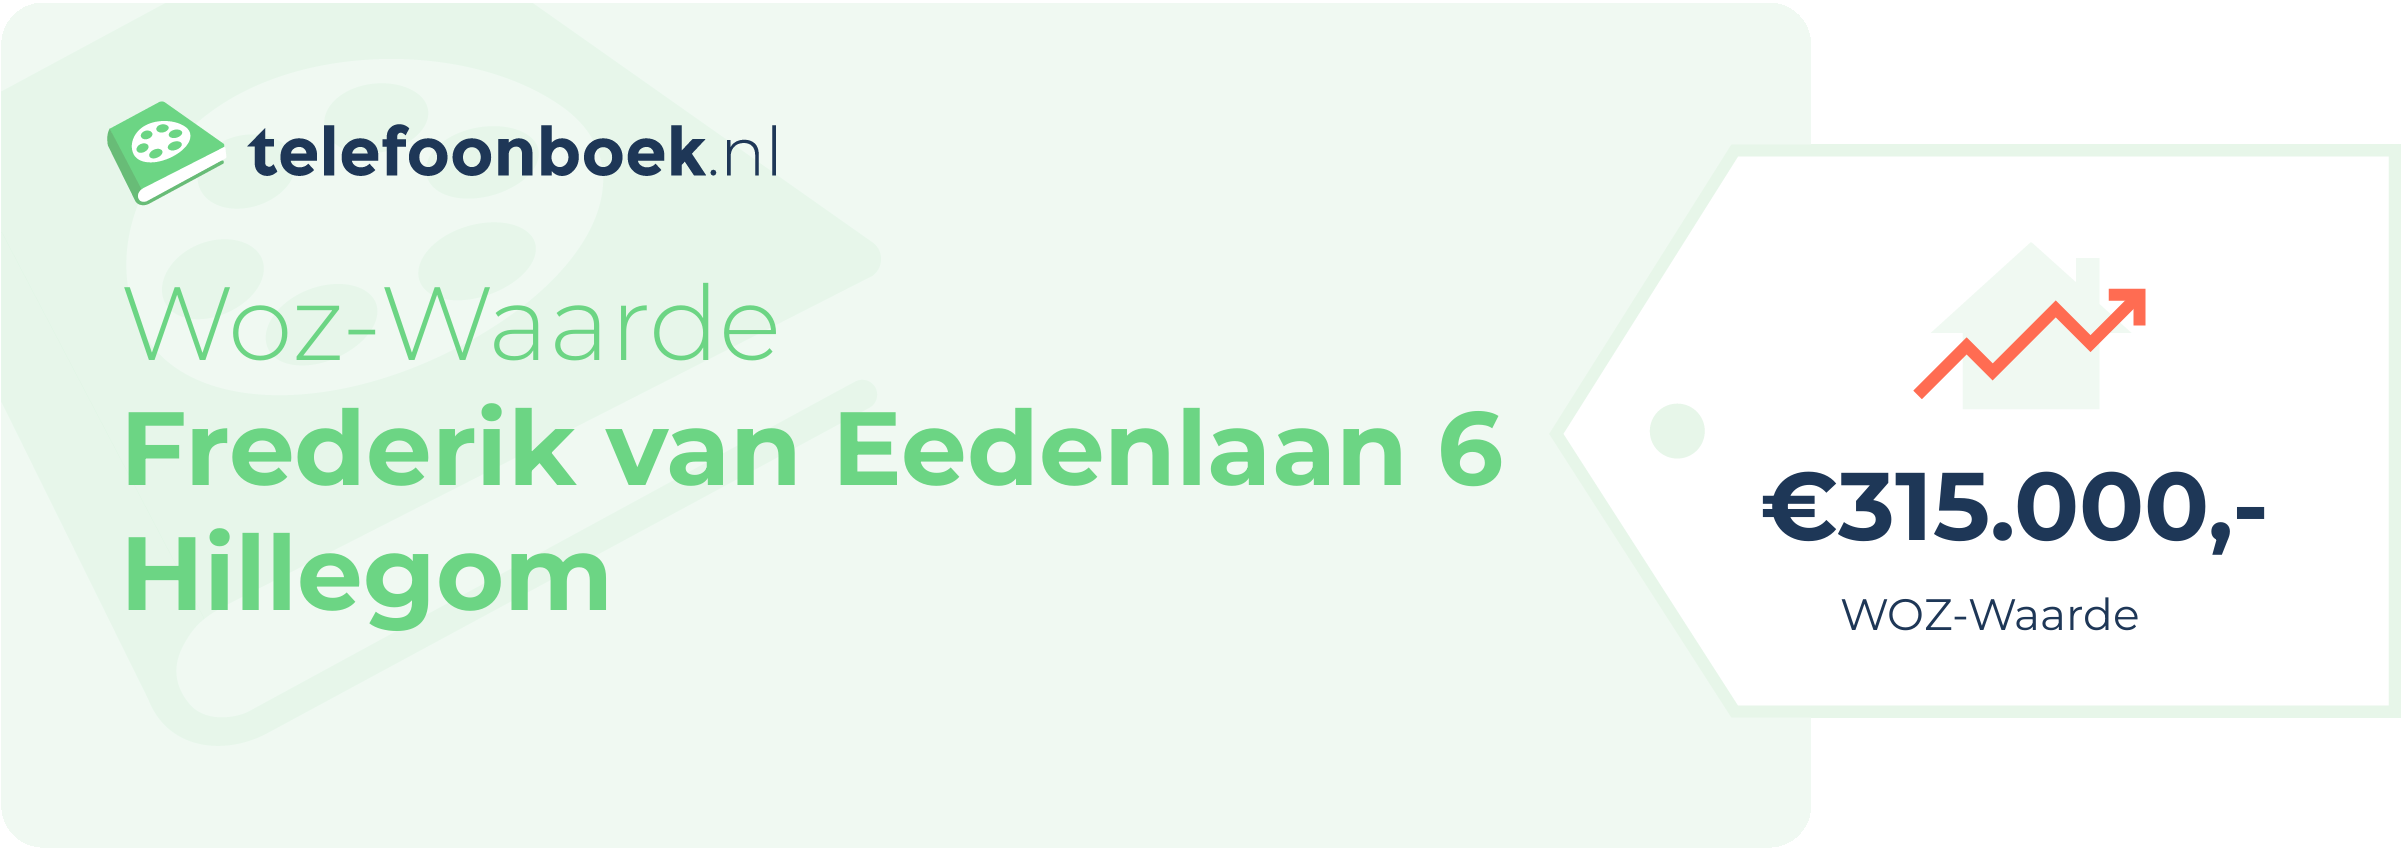 WOZ-waarde Frederik Van Eedenlaan 6 Hillegom